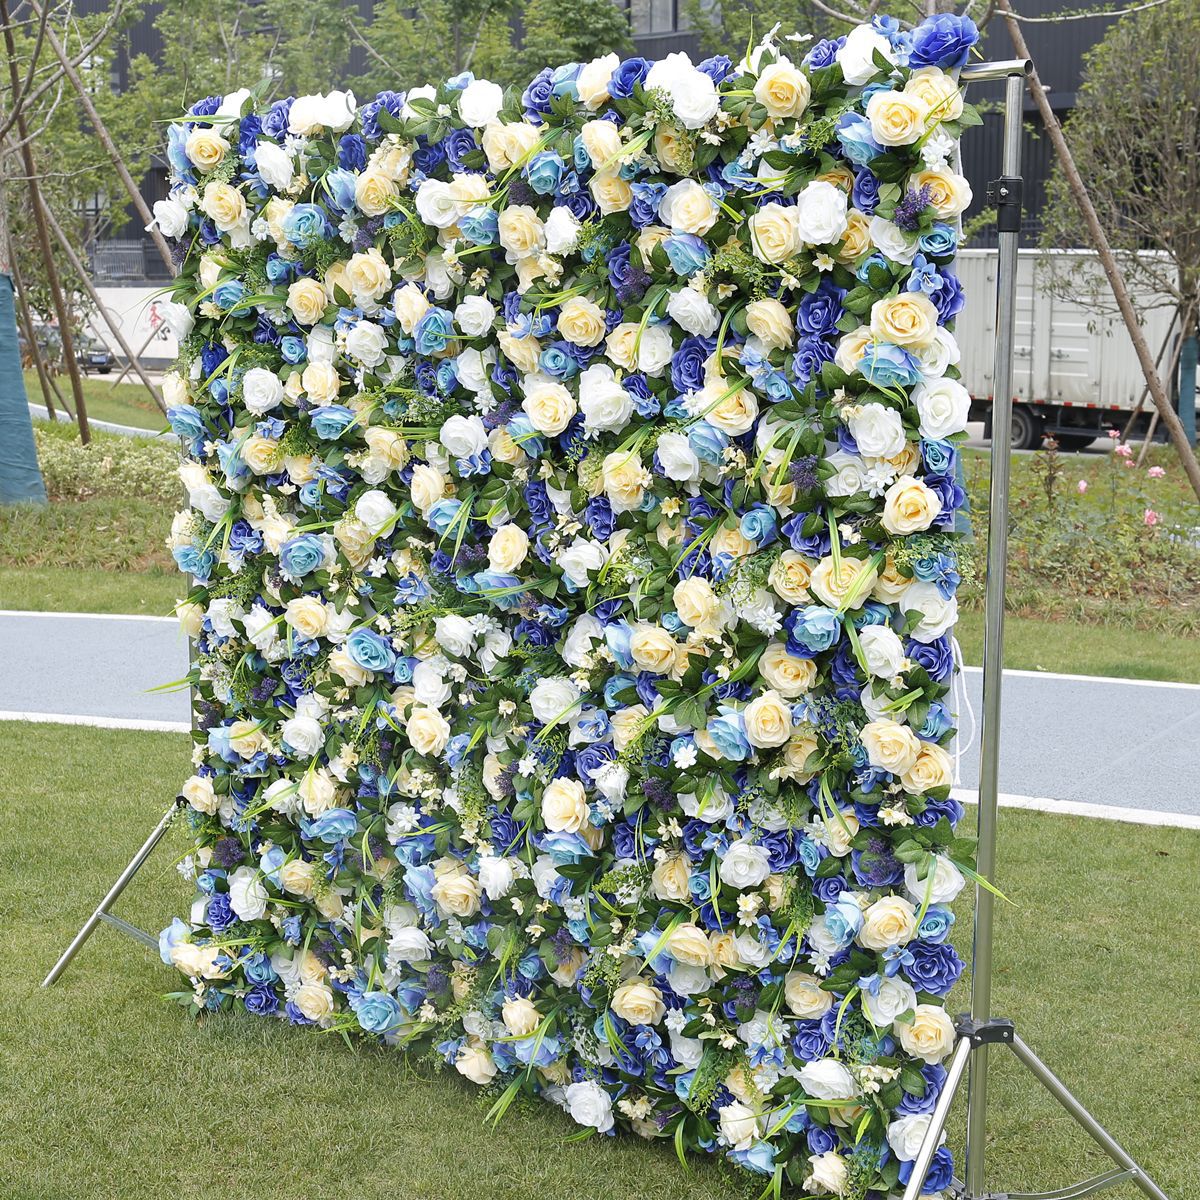 Erdő stílusú ruha alsó szimuláció virágfal háttér fal zöld növényfal szabadtéri esküvői dekorációs tevékenység elrendezés virágfal